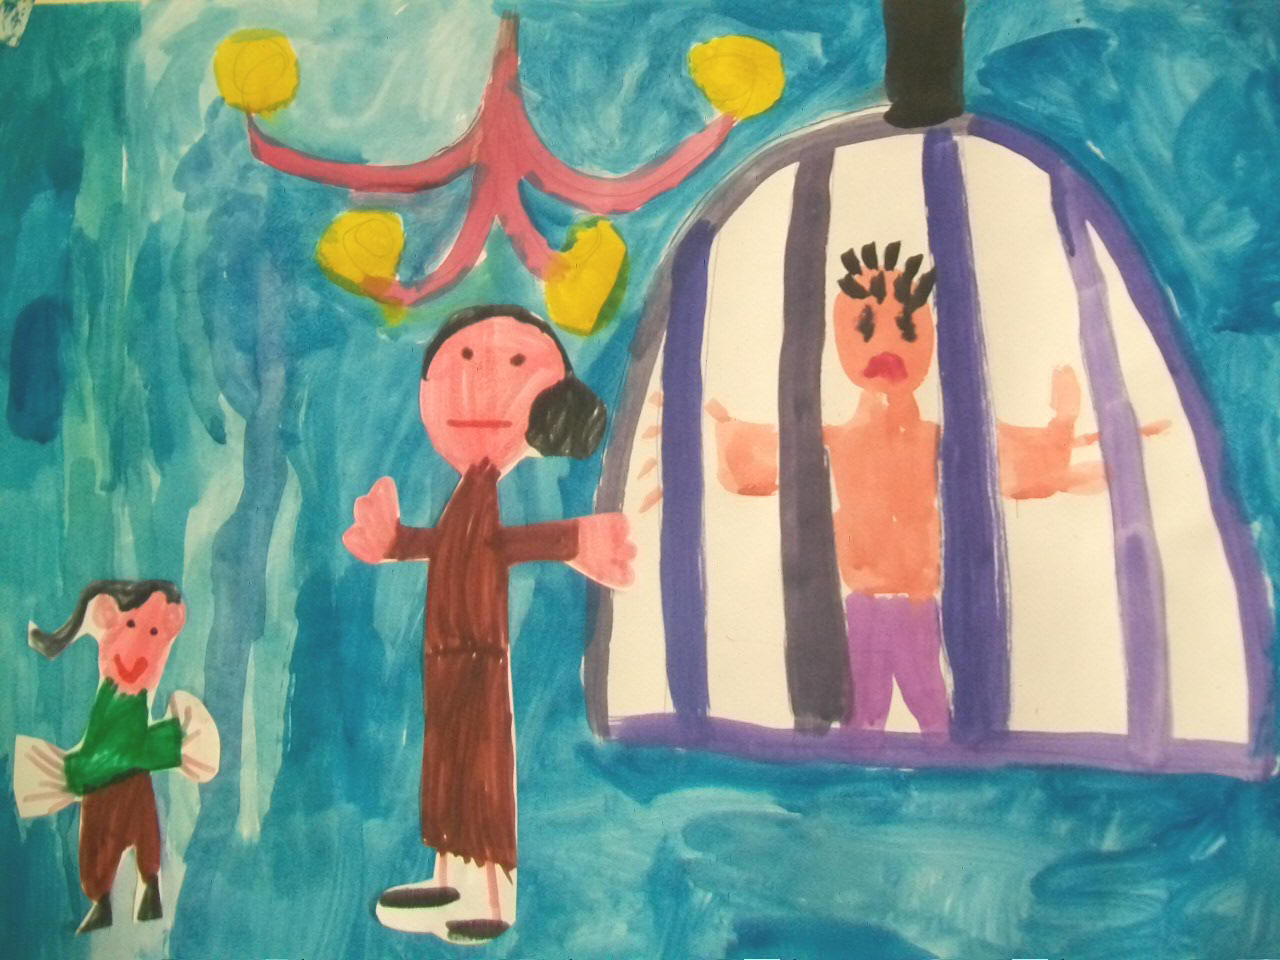 pittura in sequenza della storia di Hansel e Gretel realizzata da gruppi di bambini